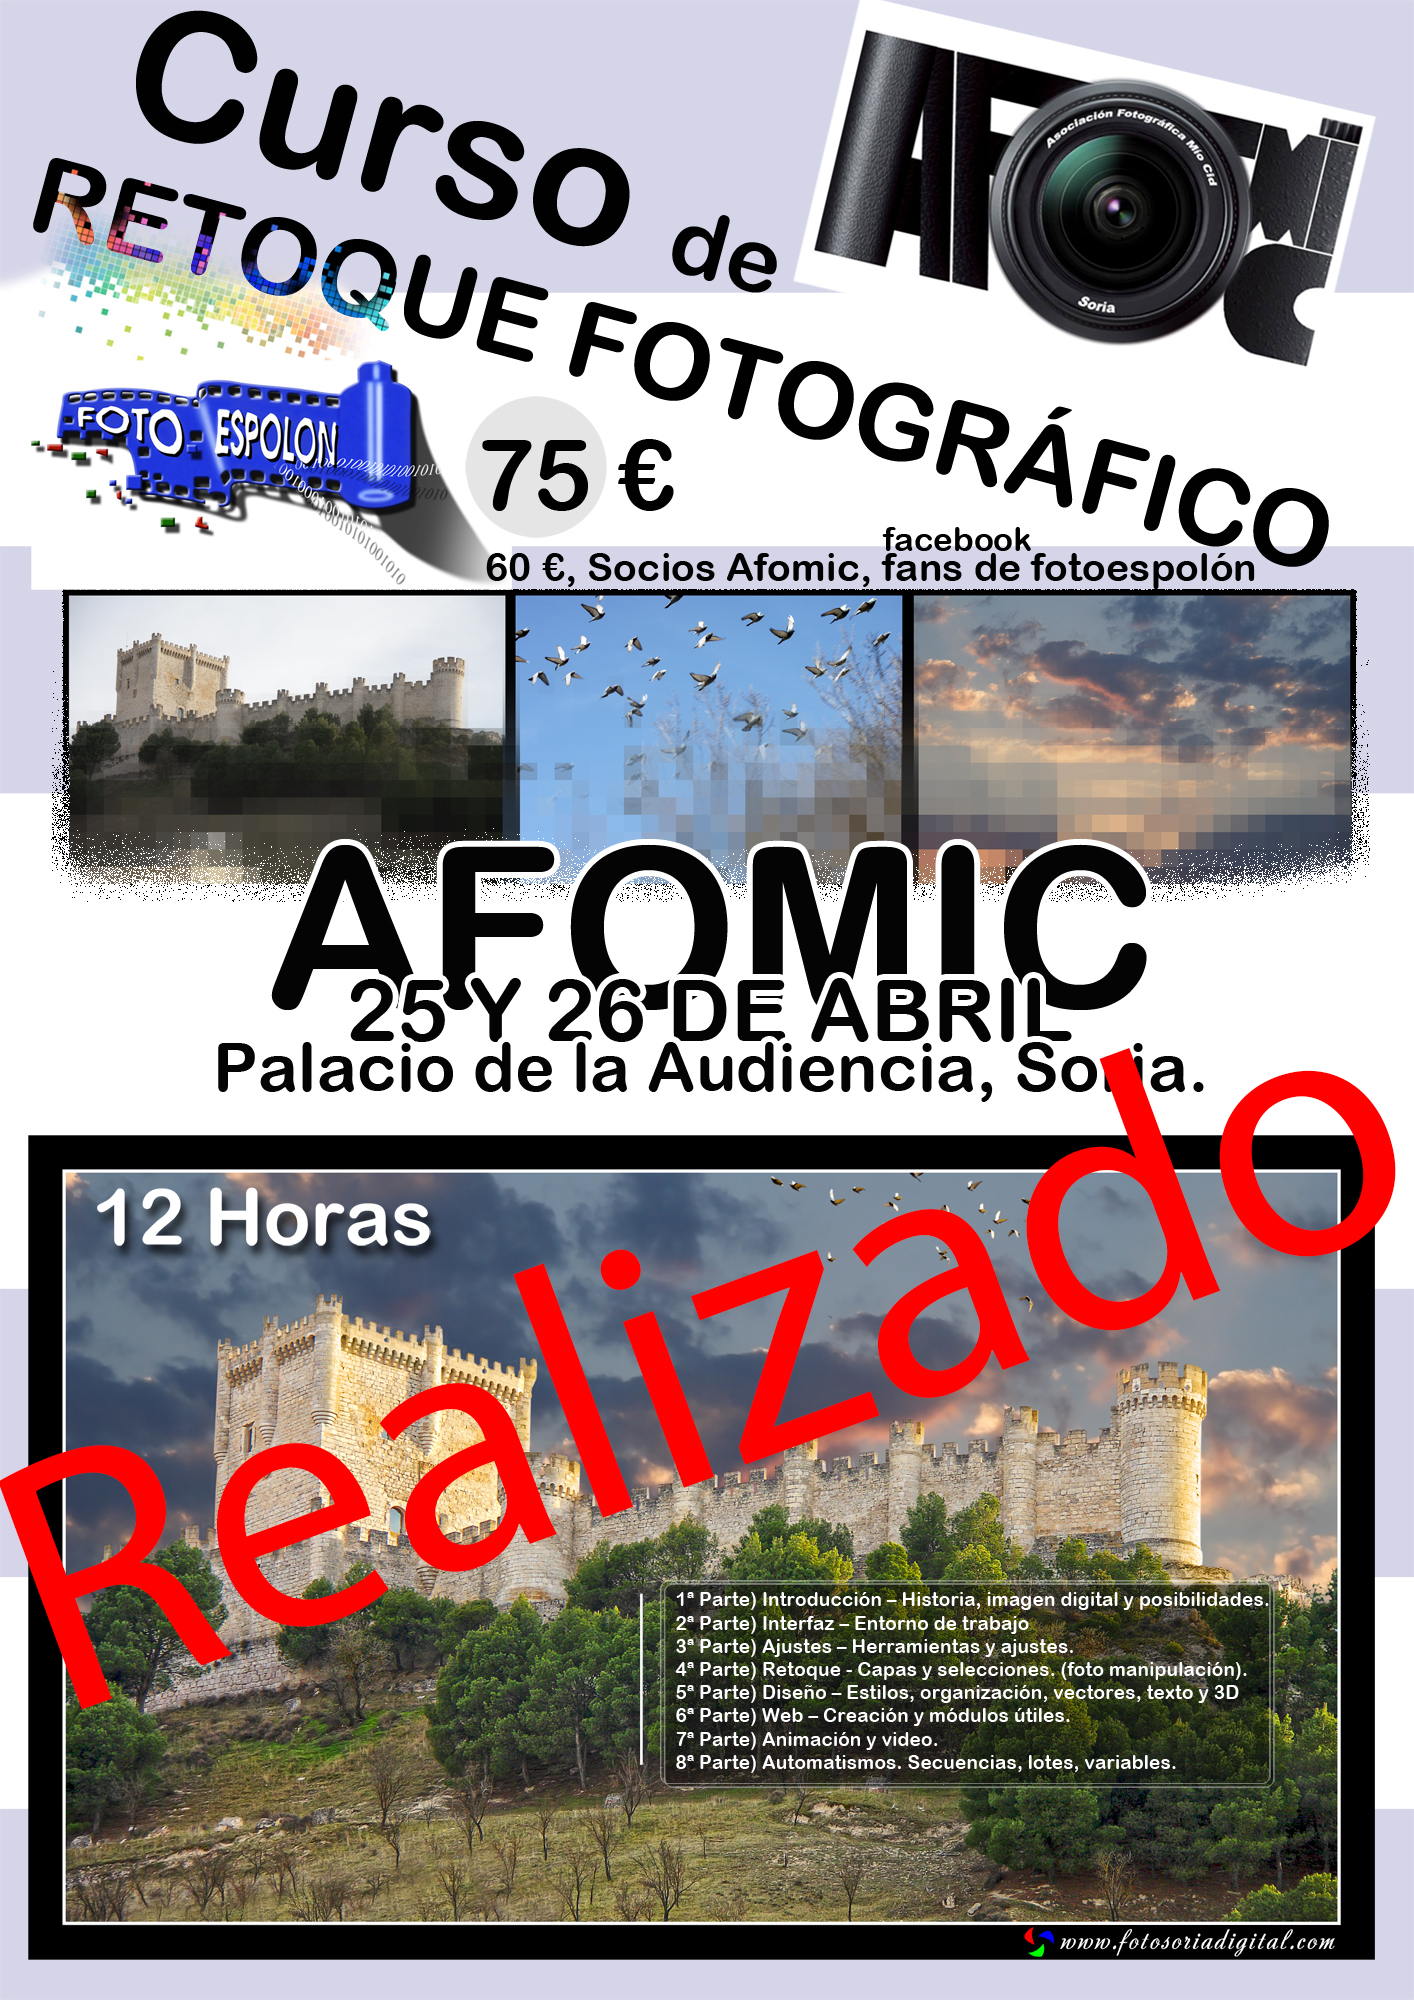 Curso de retoque fotográfico realizado en el Palacio de la audiencia en Soria con la colaboración de atomic